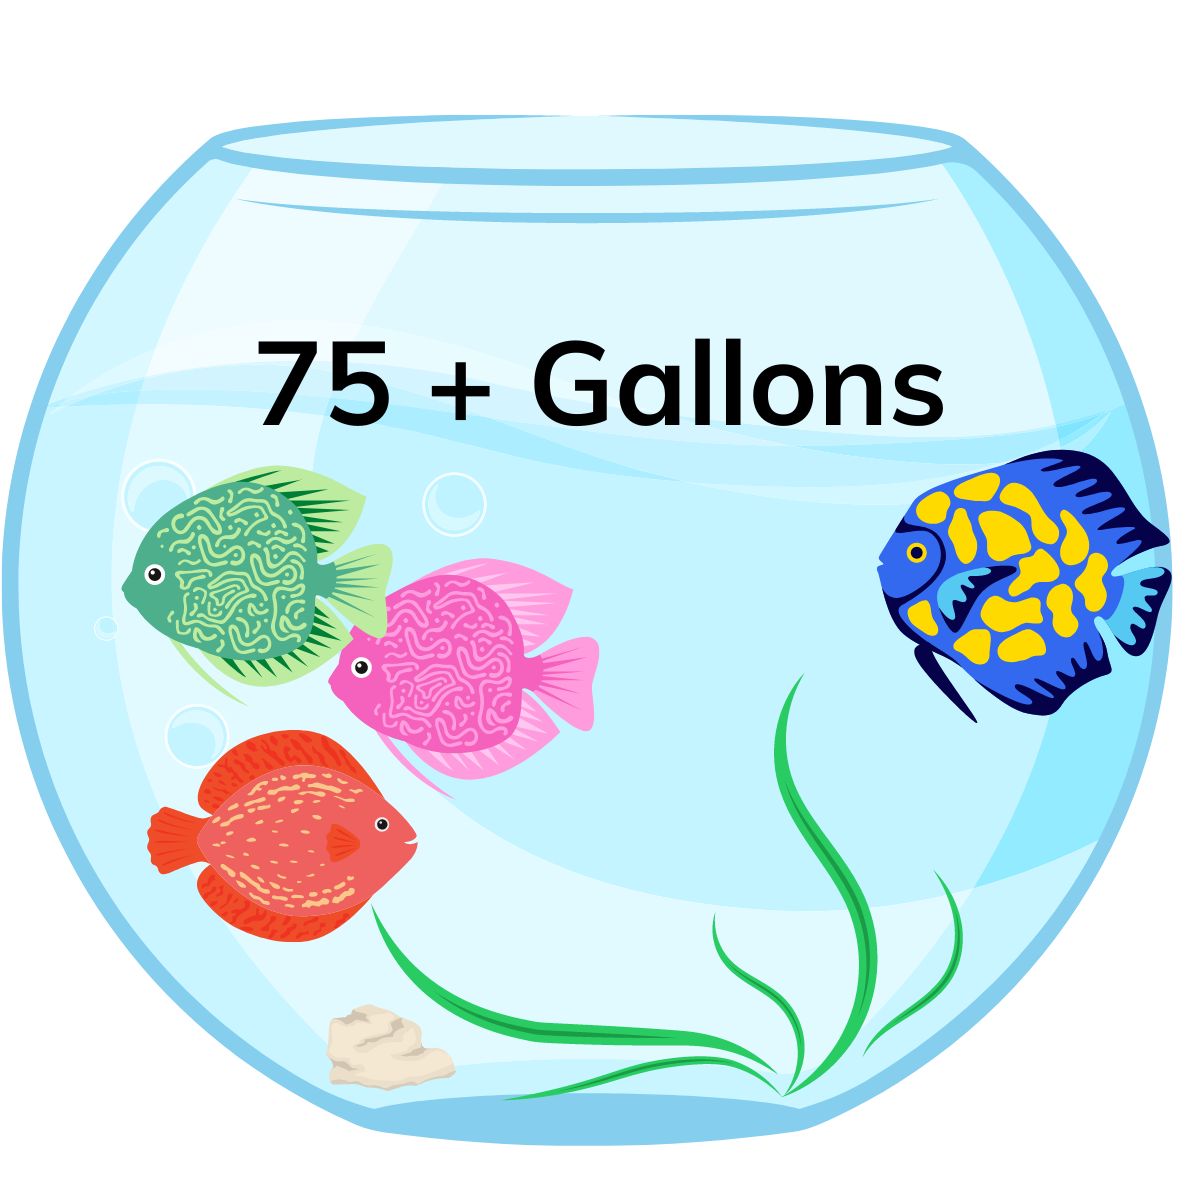 75+ gallon tank